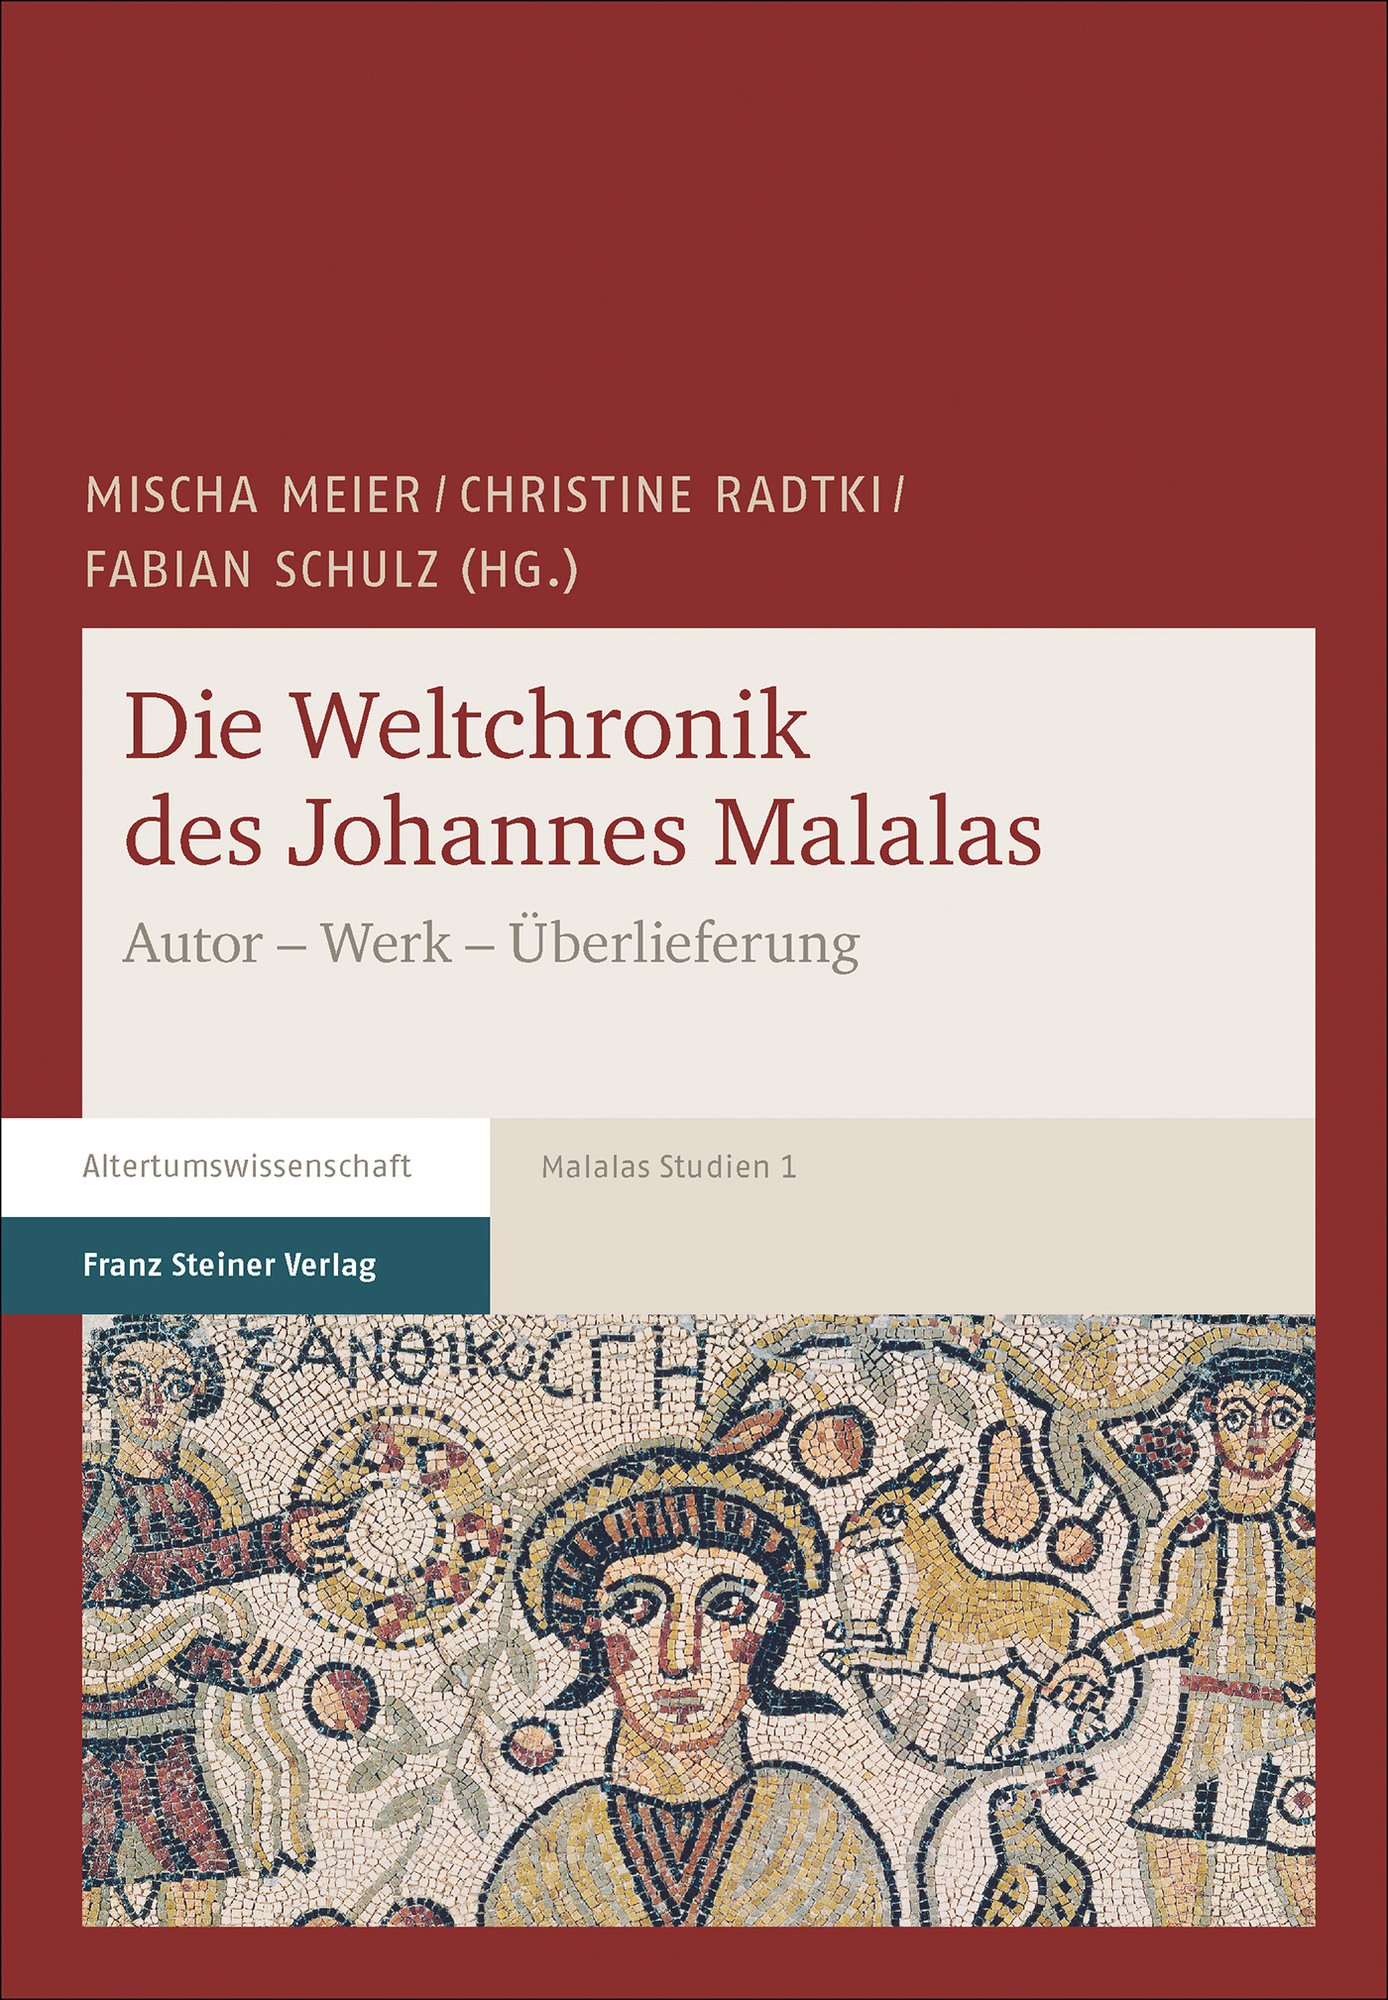 Die Weltchronik des Johannes Malalas